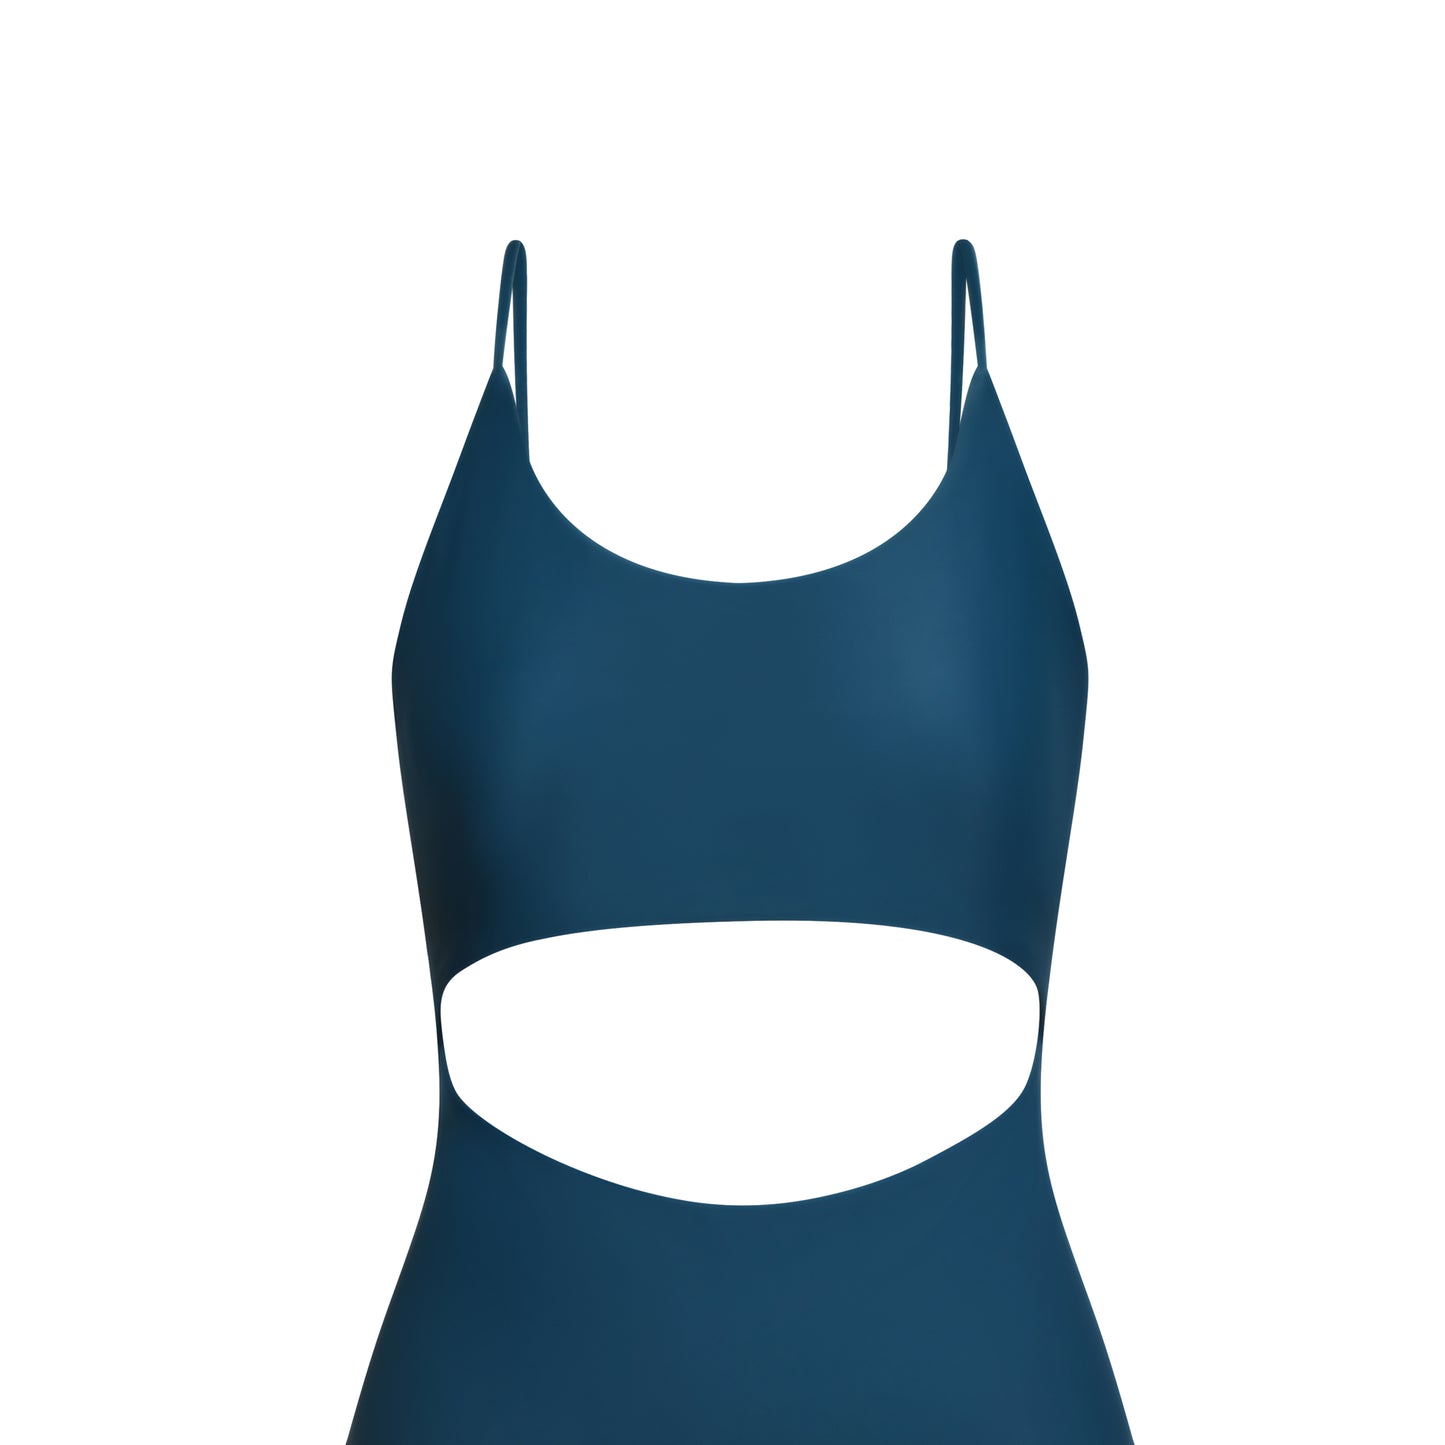 swimsuit teal blue surf swim cutout details twist